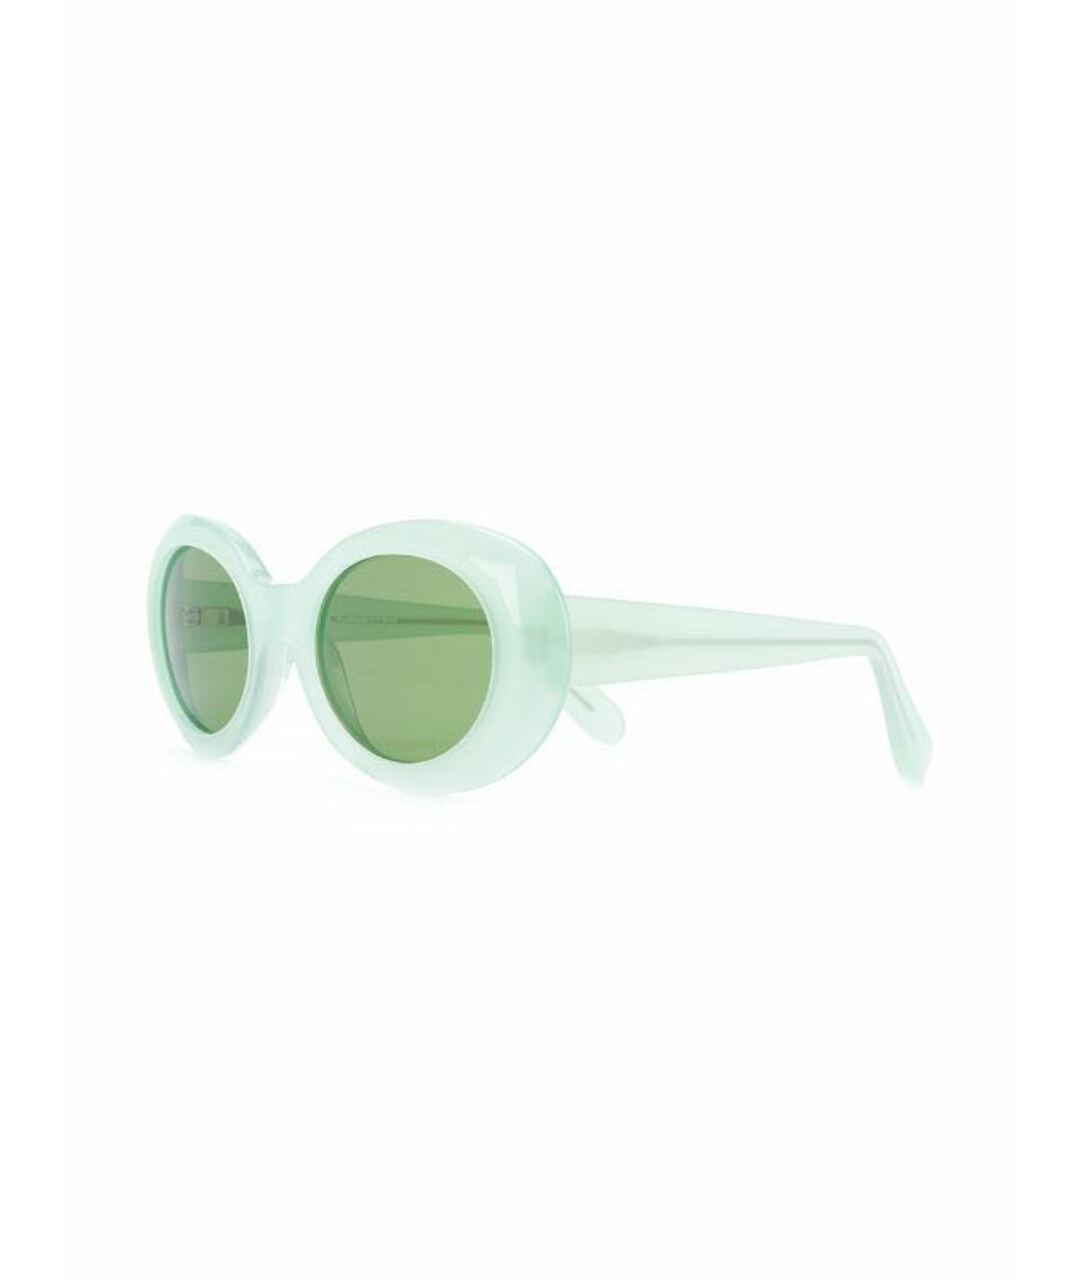 ACNE STUDIOS Зеленые пластиковые солнцезащитные очки, фото 2